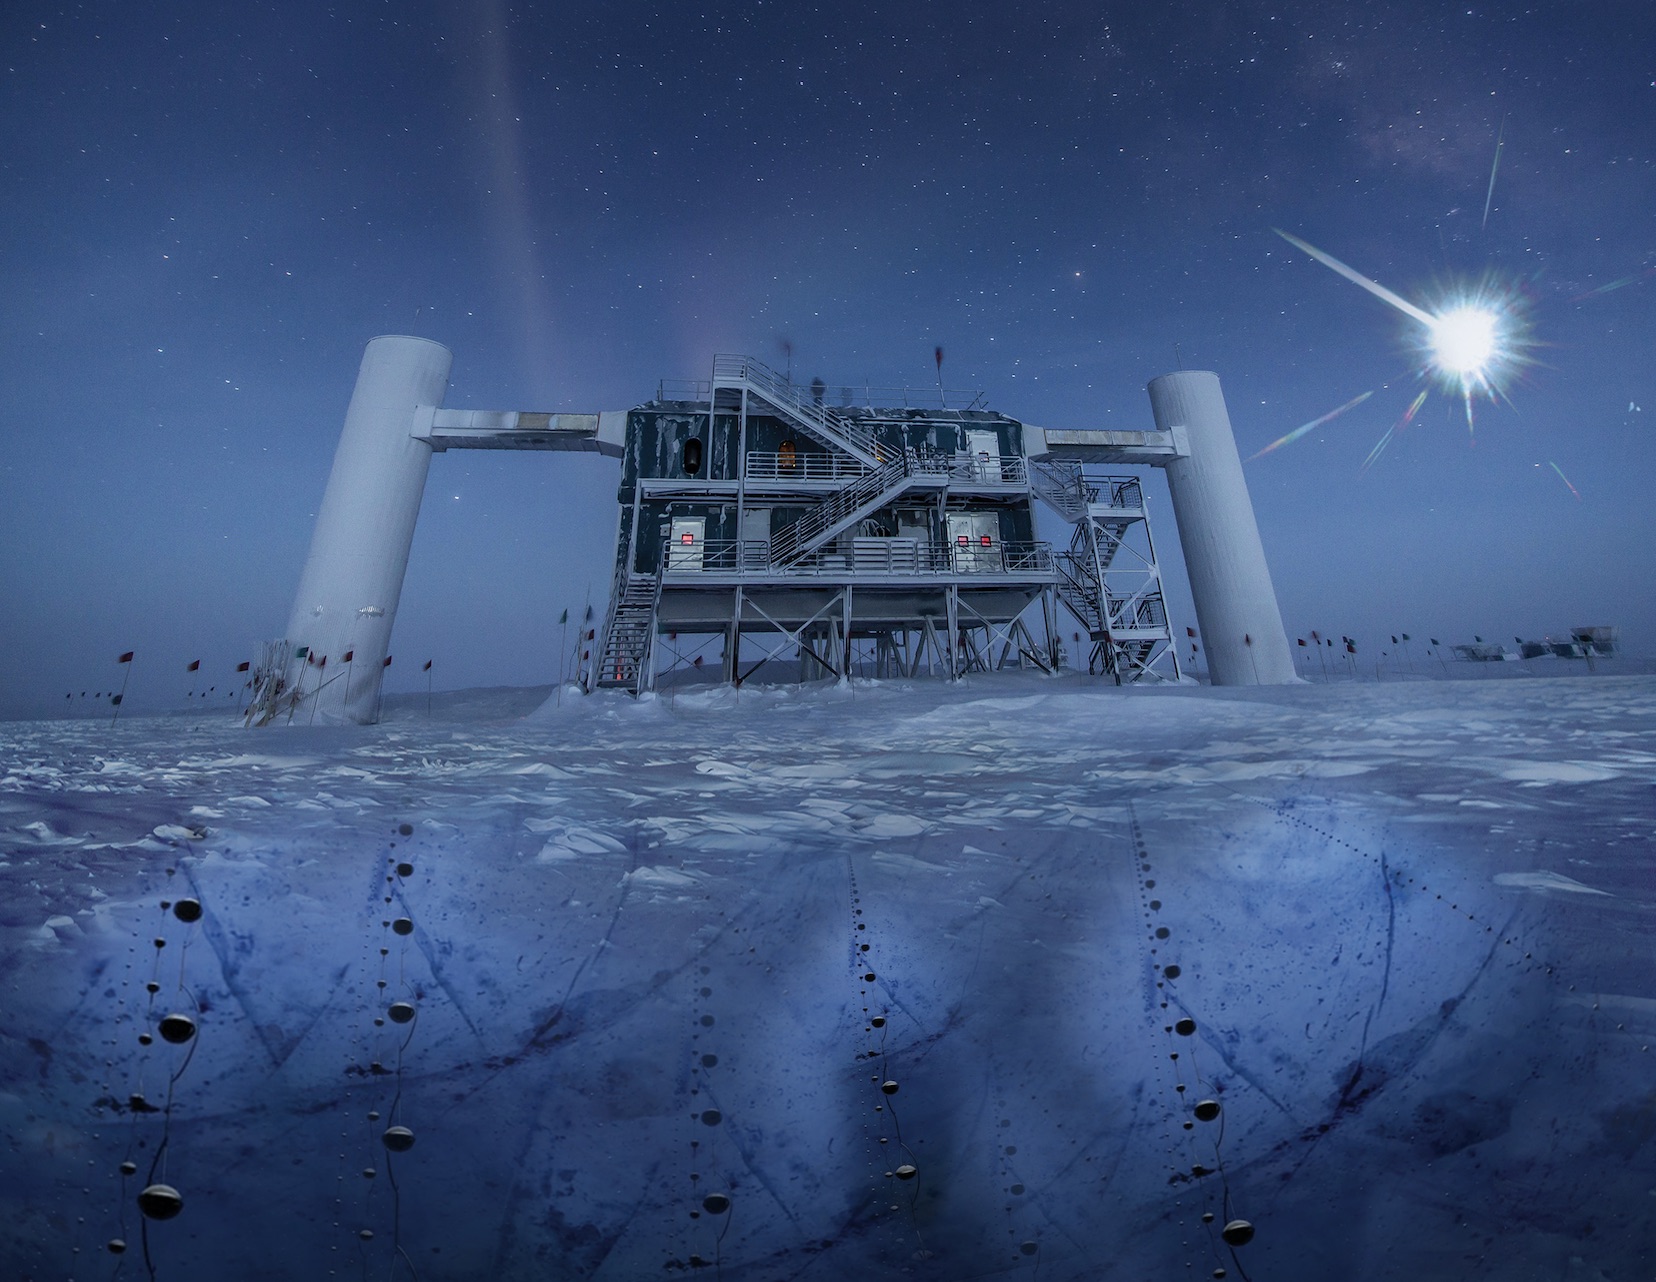 Une vue des bâtiments de surface du détecteur géant de neutrinos IceCube, en Antarctique. La pureté de la glace à plus d’un kilomètre de profondeur permet à plus de 5.000 photomultiplicateurs d'enregistrer avec précision les flashs bleutés, très ténus, générés par les muons issus de la collision des neutrinos avec les noyaux atomiques dans la glace. La construction de IceCube a commencé en 2005, mais le détecteur est une version plus grande d'Amanda qui date du début des années 1990. © Felipe Pedreros, IceCube, NSF